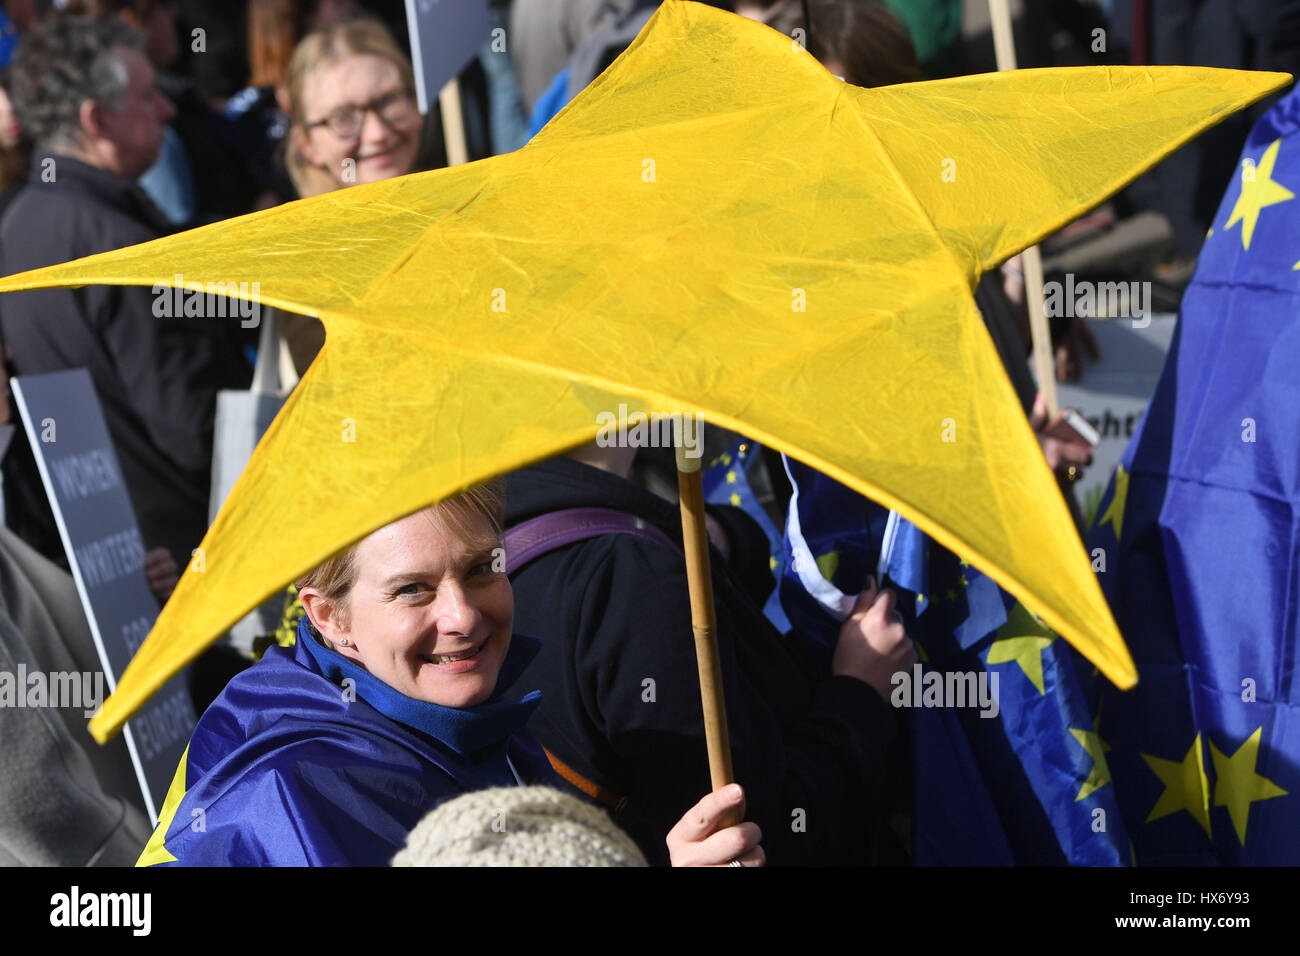 Una stella che simboleggia l'Unione europea viene trattenuto mediante un pro-UE protester prendendo parte ad un marzo per l'Europa rally contro Brexit nel centro di Londra. Foto Stock